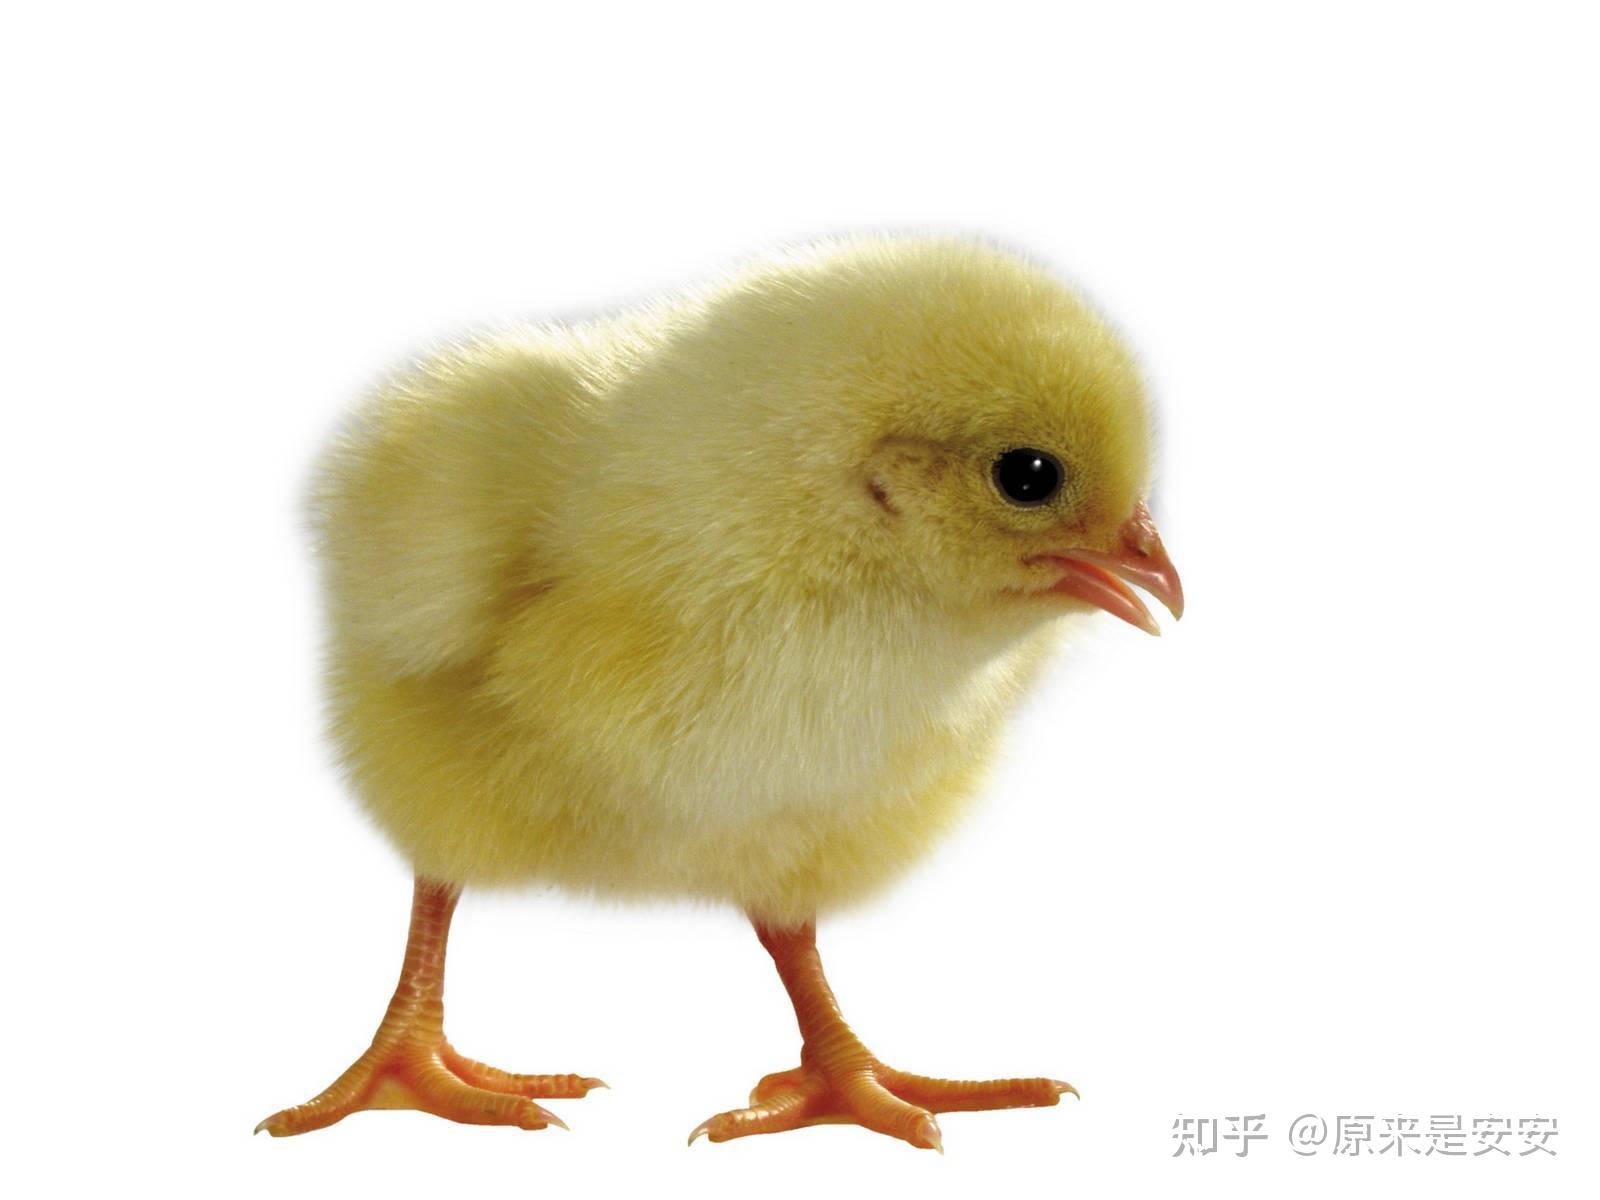 可爱的小鸡孵化卡通矢量插画集合 cute Chick hatch cartoon collection – 设计小咖